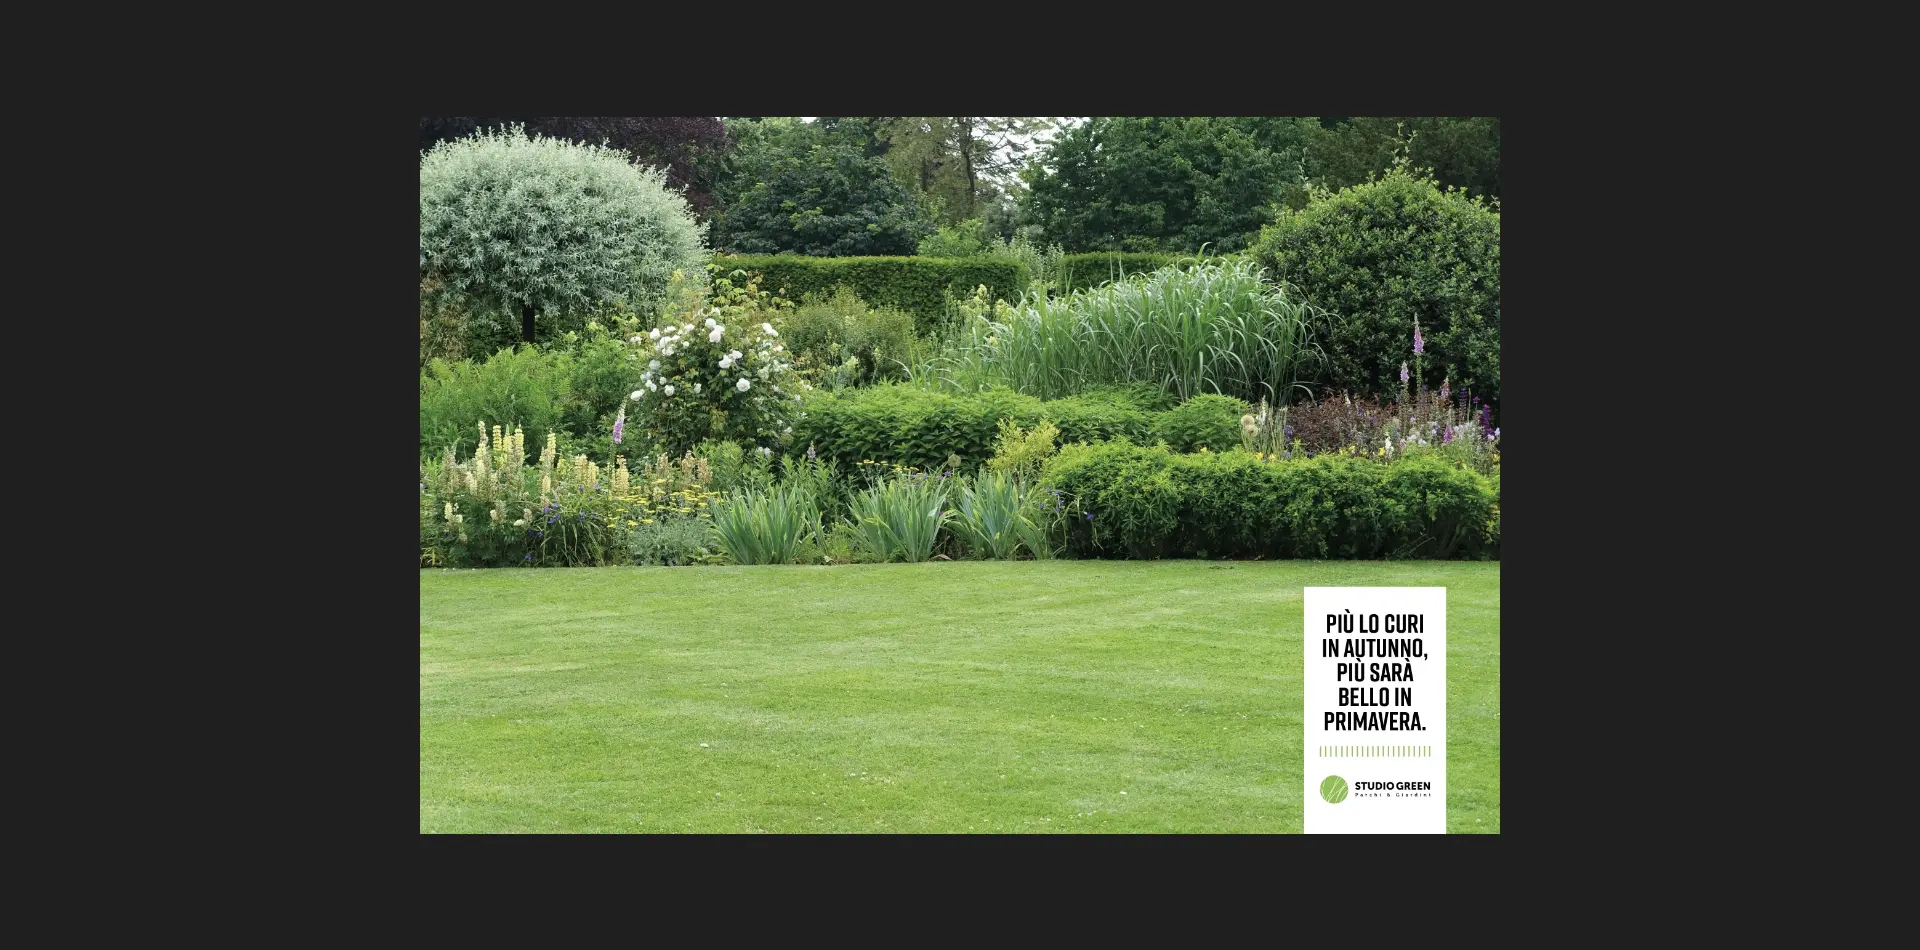 Realizzazione campagna pubblicitaria social cura del giardino per Studio Green